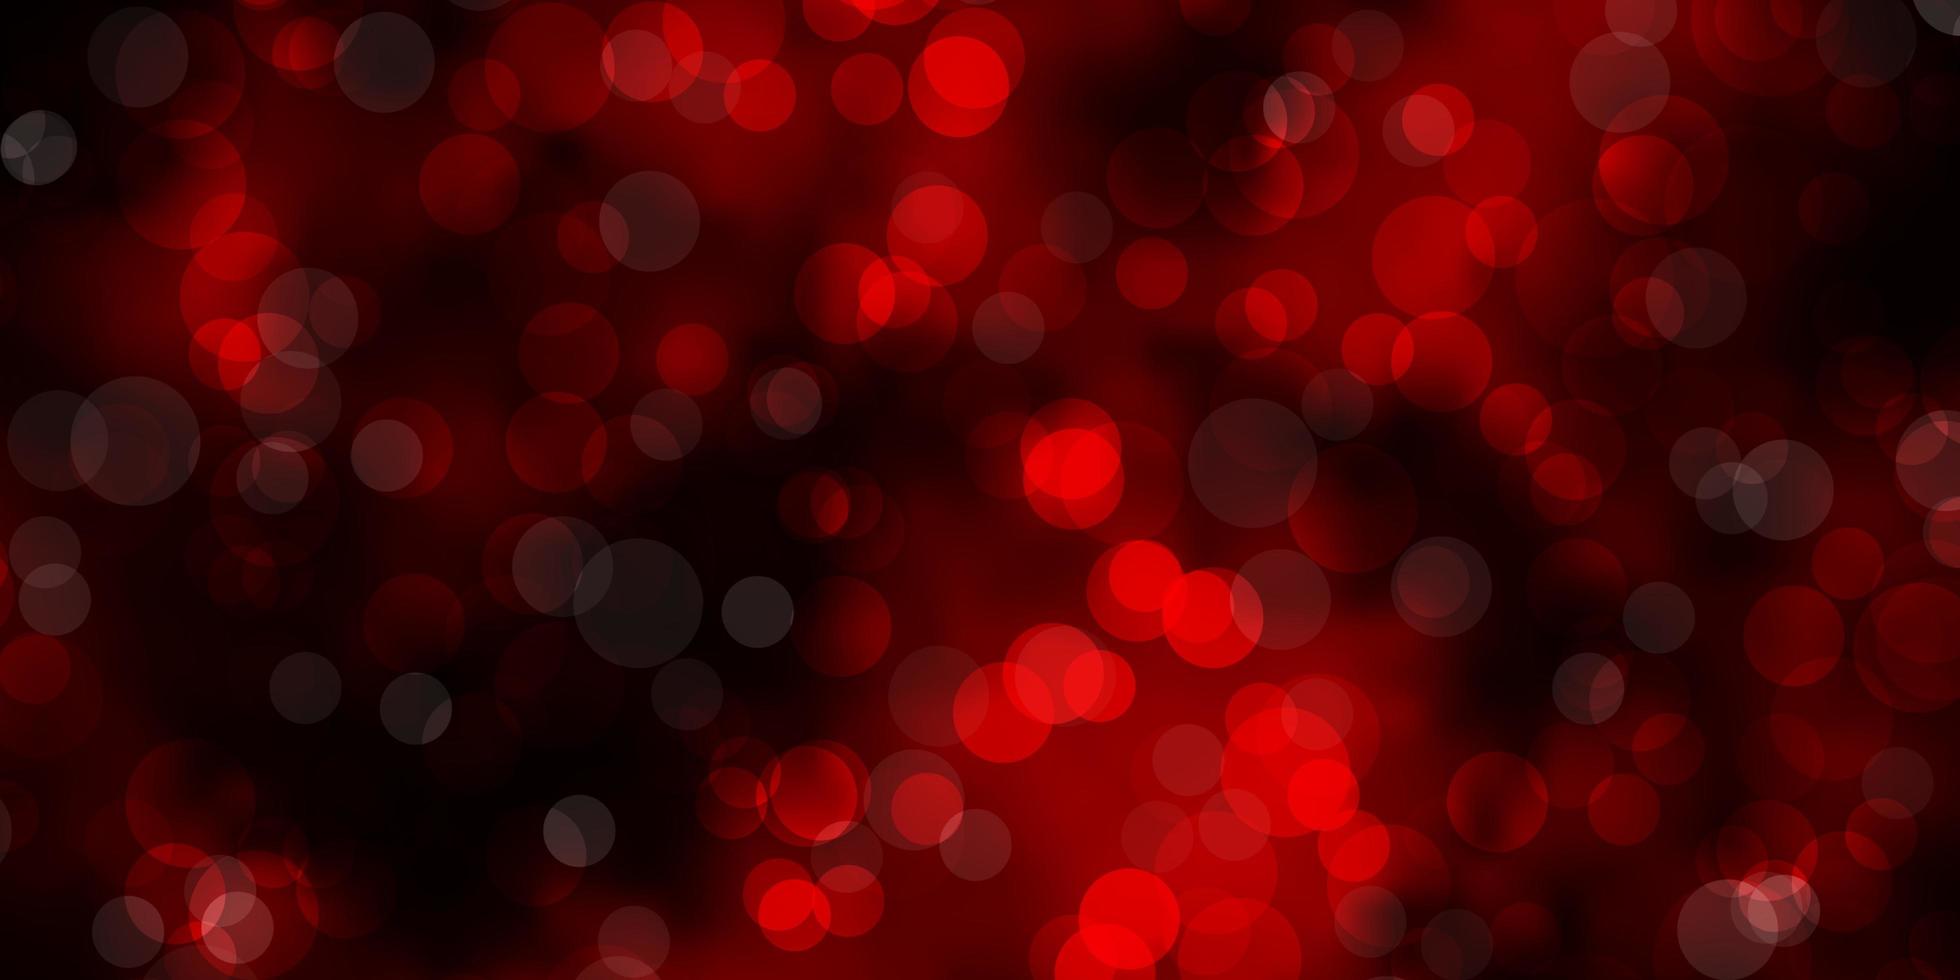 modello vettoriale rosso scuro con cerchi. illustrazione astratta glitter con gocce colorate. modello per annunci commerciali.